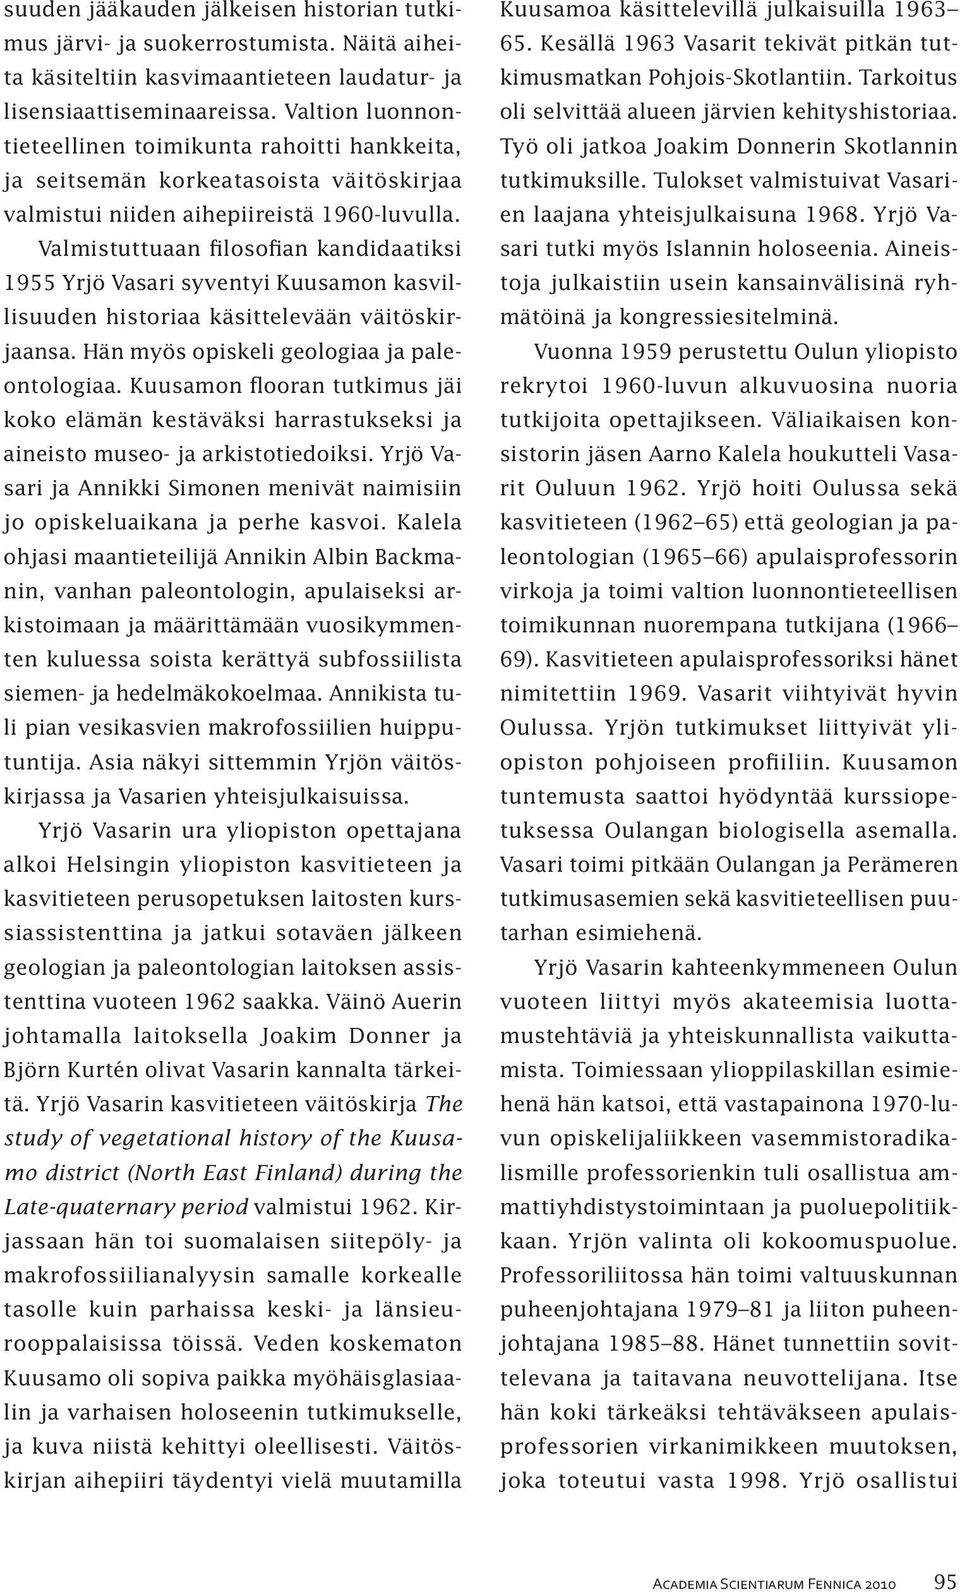 Valmistuttuaan filosofian kandidaatiksi 1955 Yrjö Vasari syventyi Kuusamon kasvillisuuden historiaa käsittelevään väitöskirjaansa. Hän myös opiskeli geologiaa ja paleontologiaa.